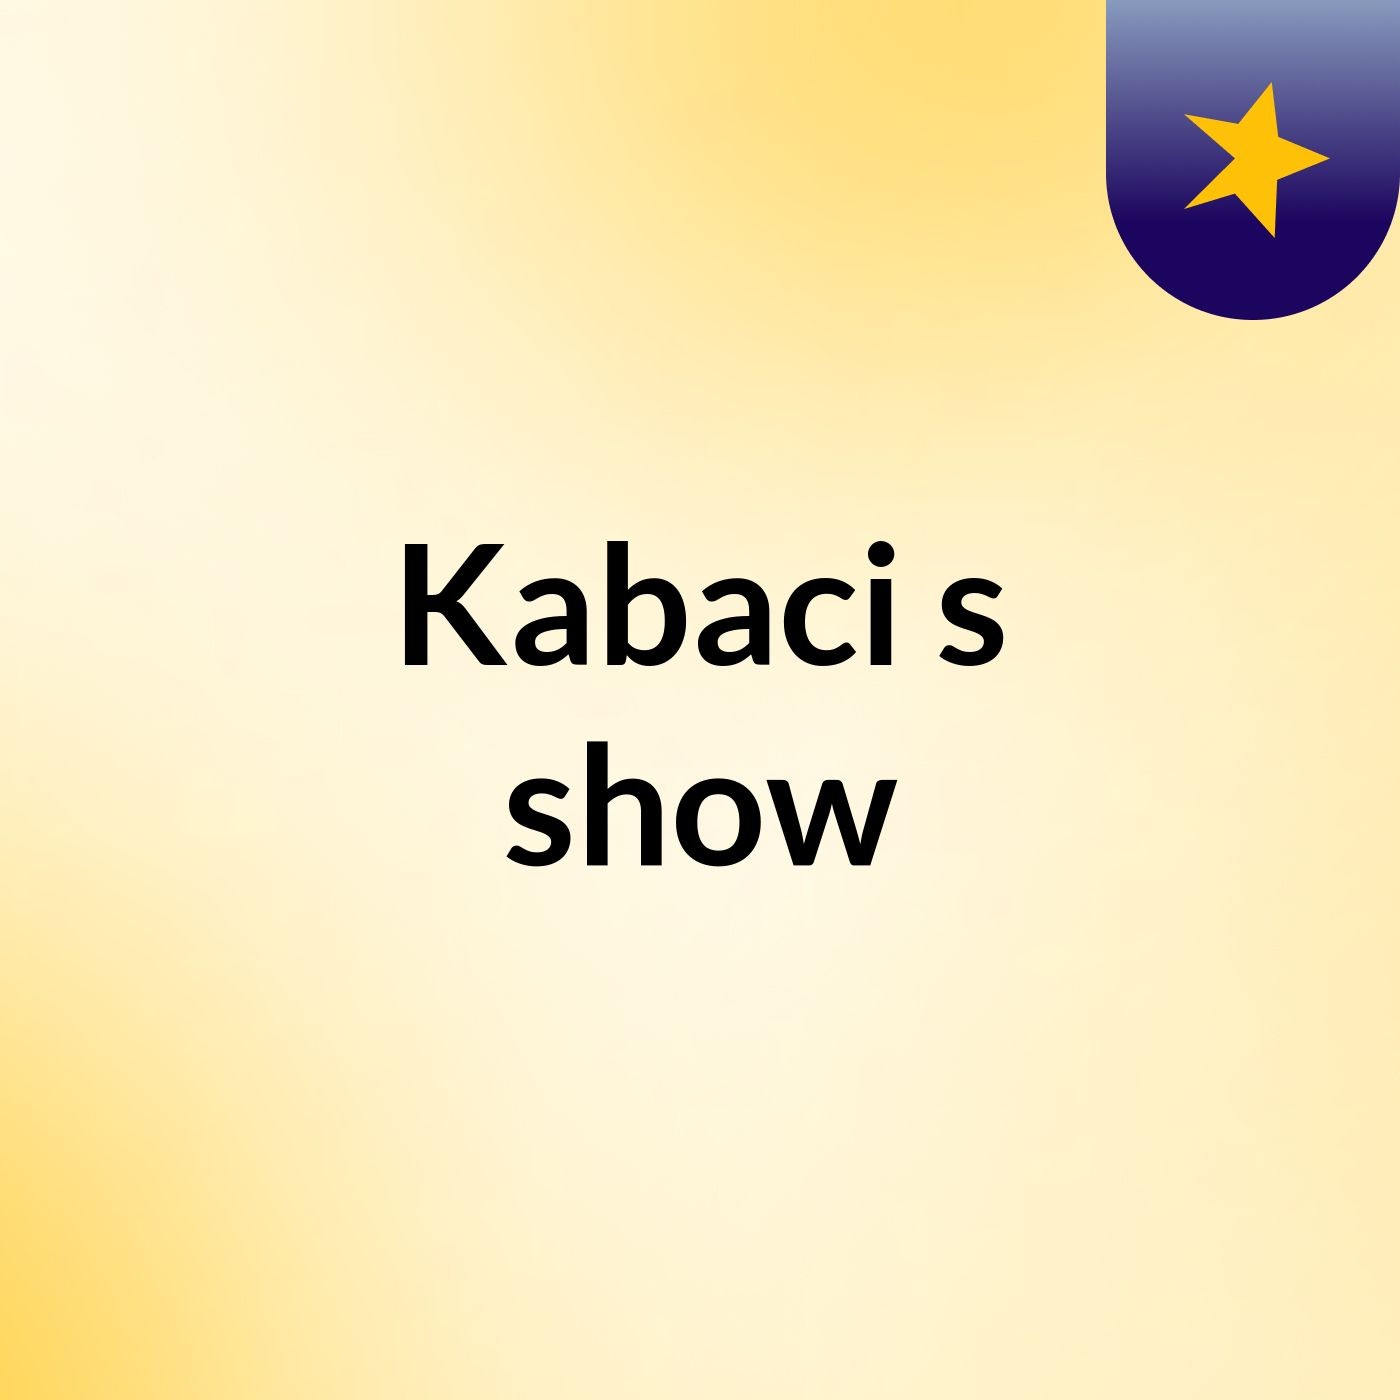 Kabaci's show